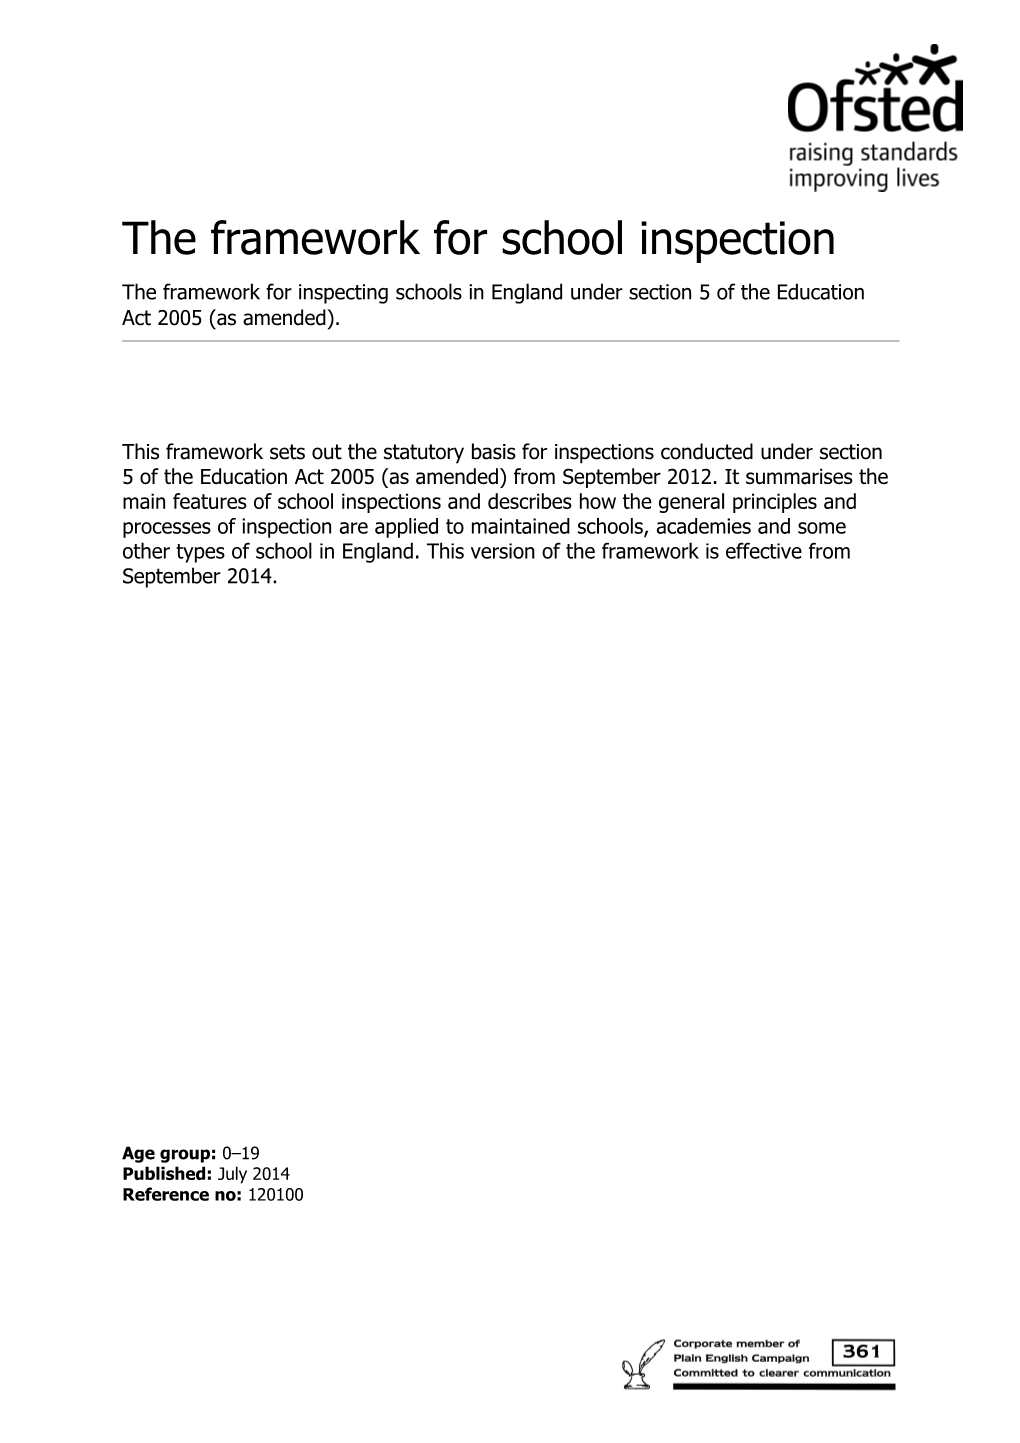 The Framework for School Inspection